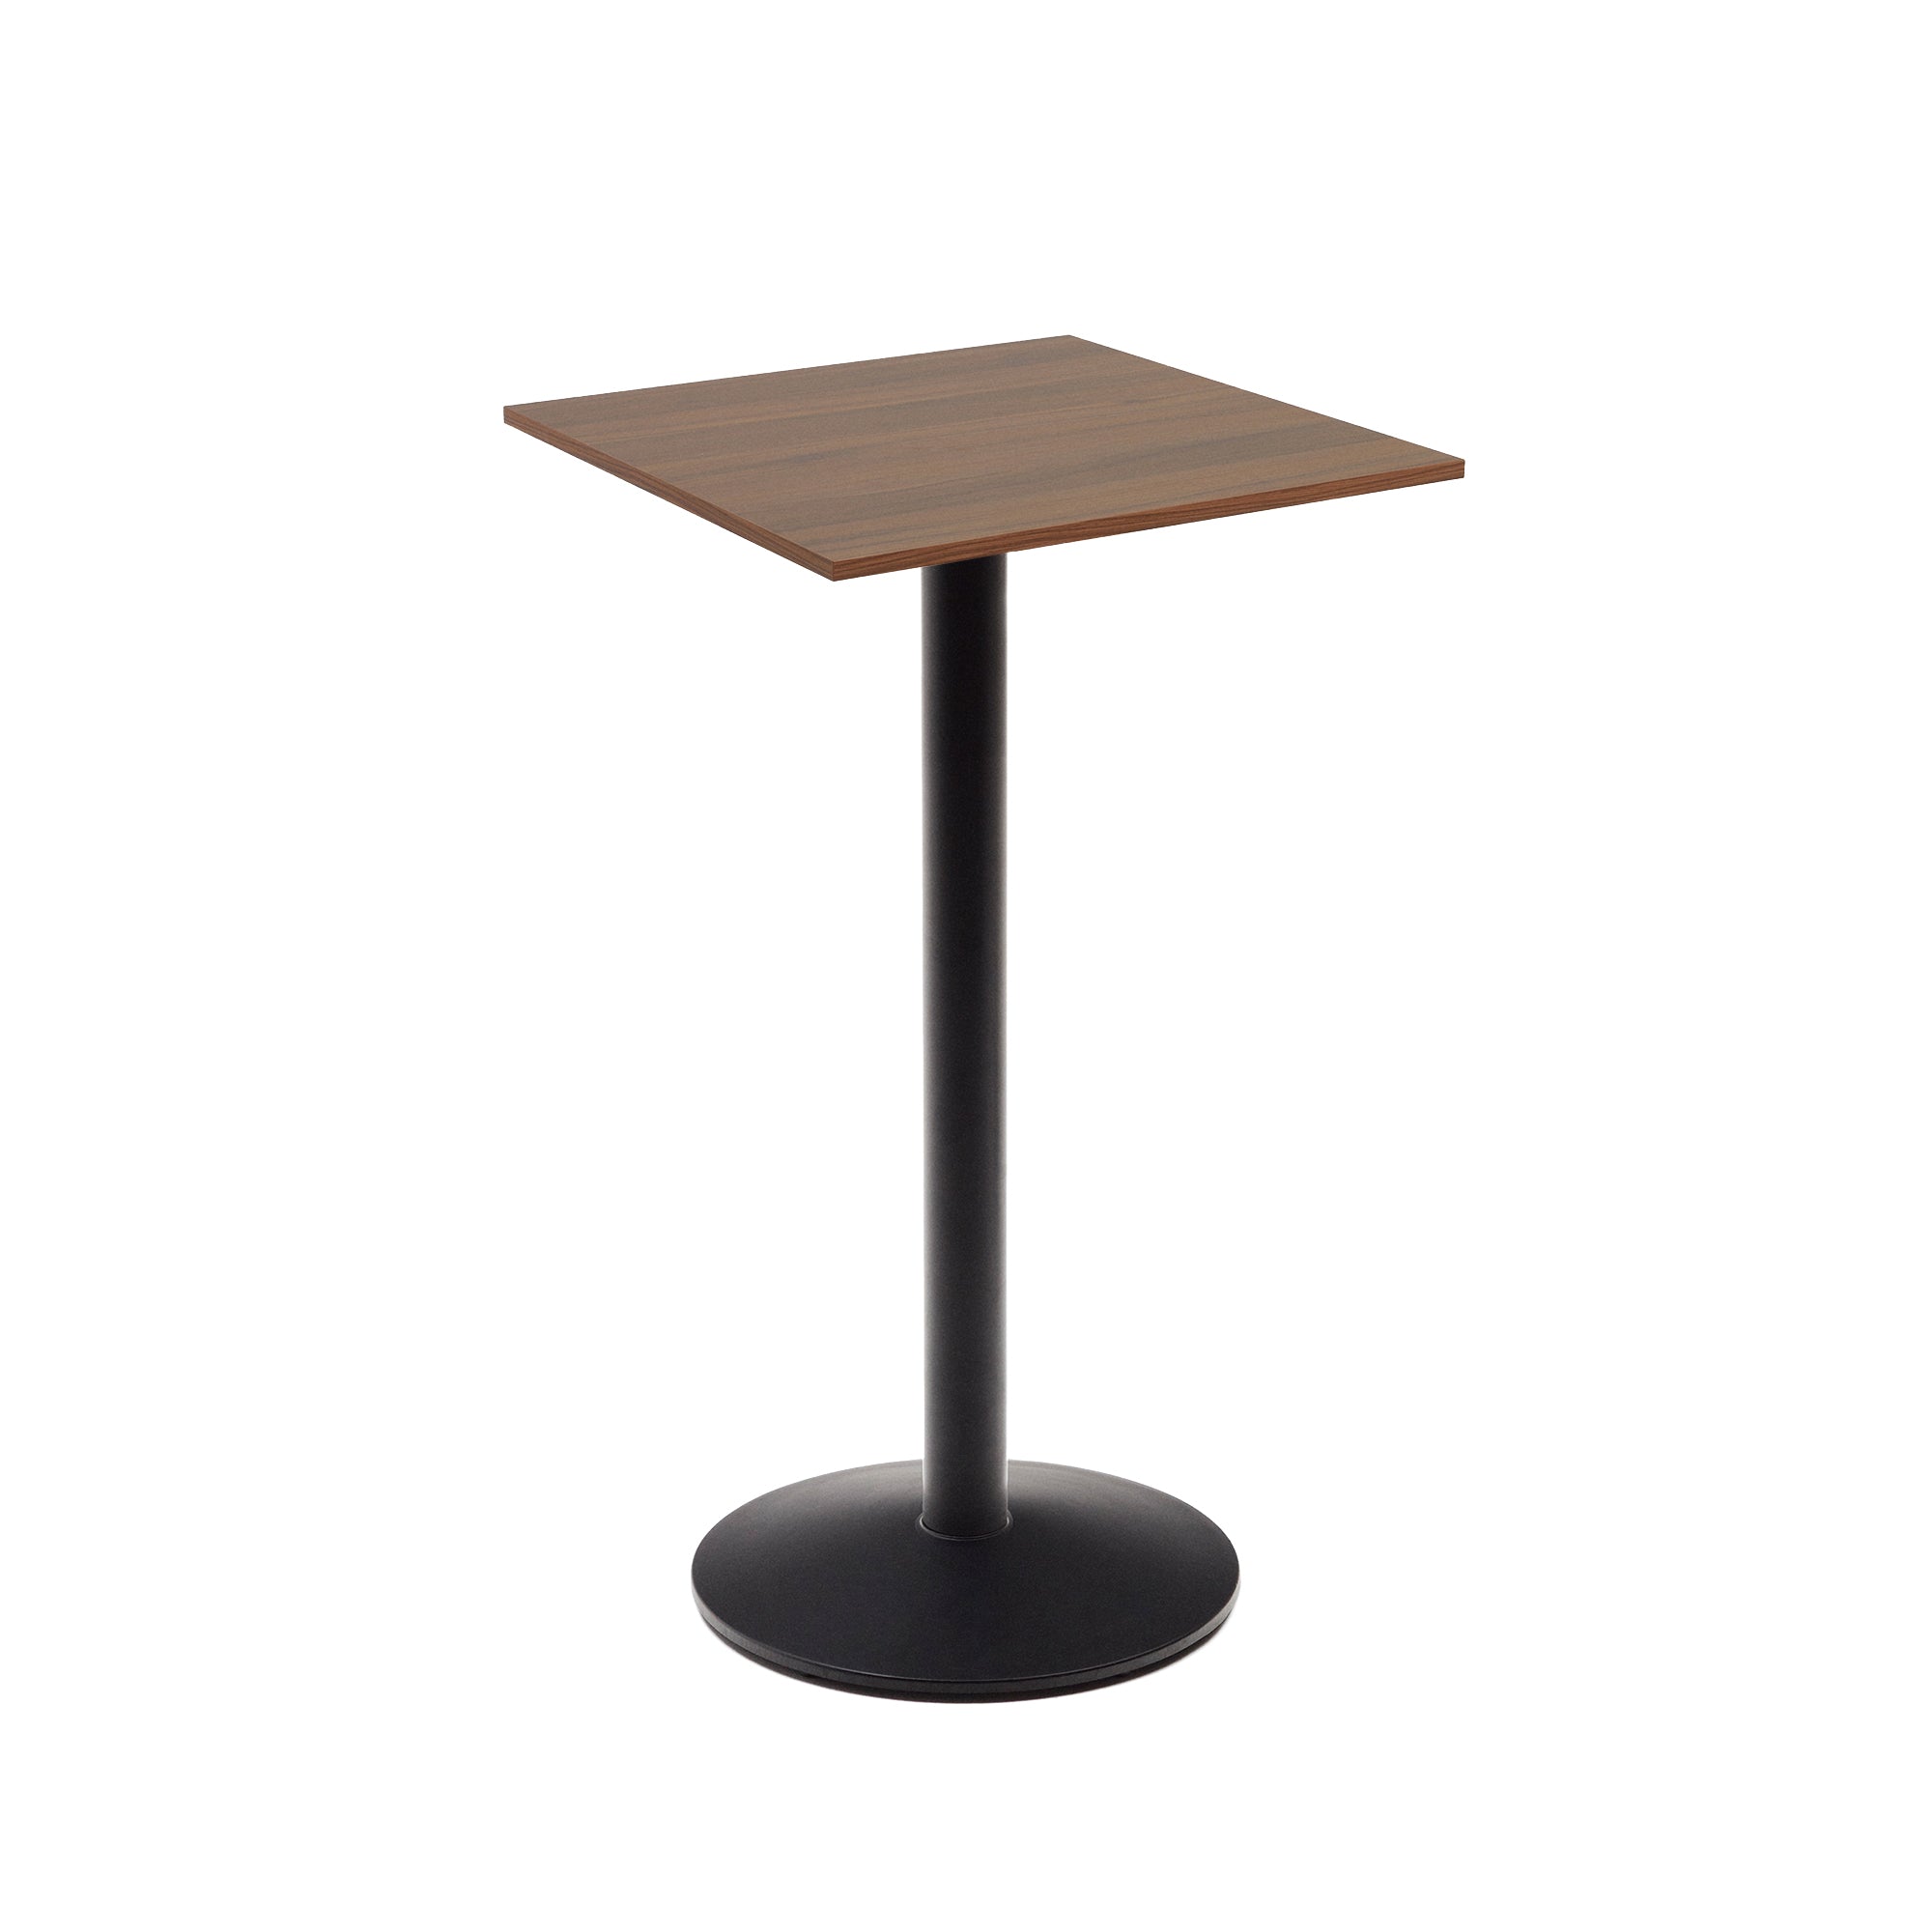 Esilda magas asztal diófa melaminból, fekete festett fémlábbal, 60x60x96 cm, 60x60x96 cm